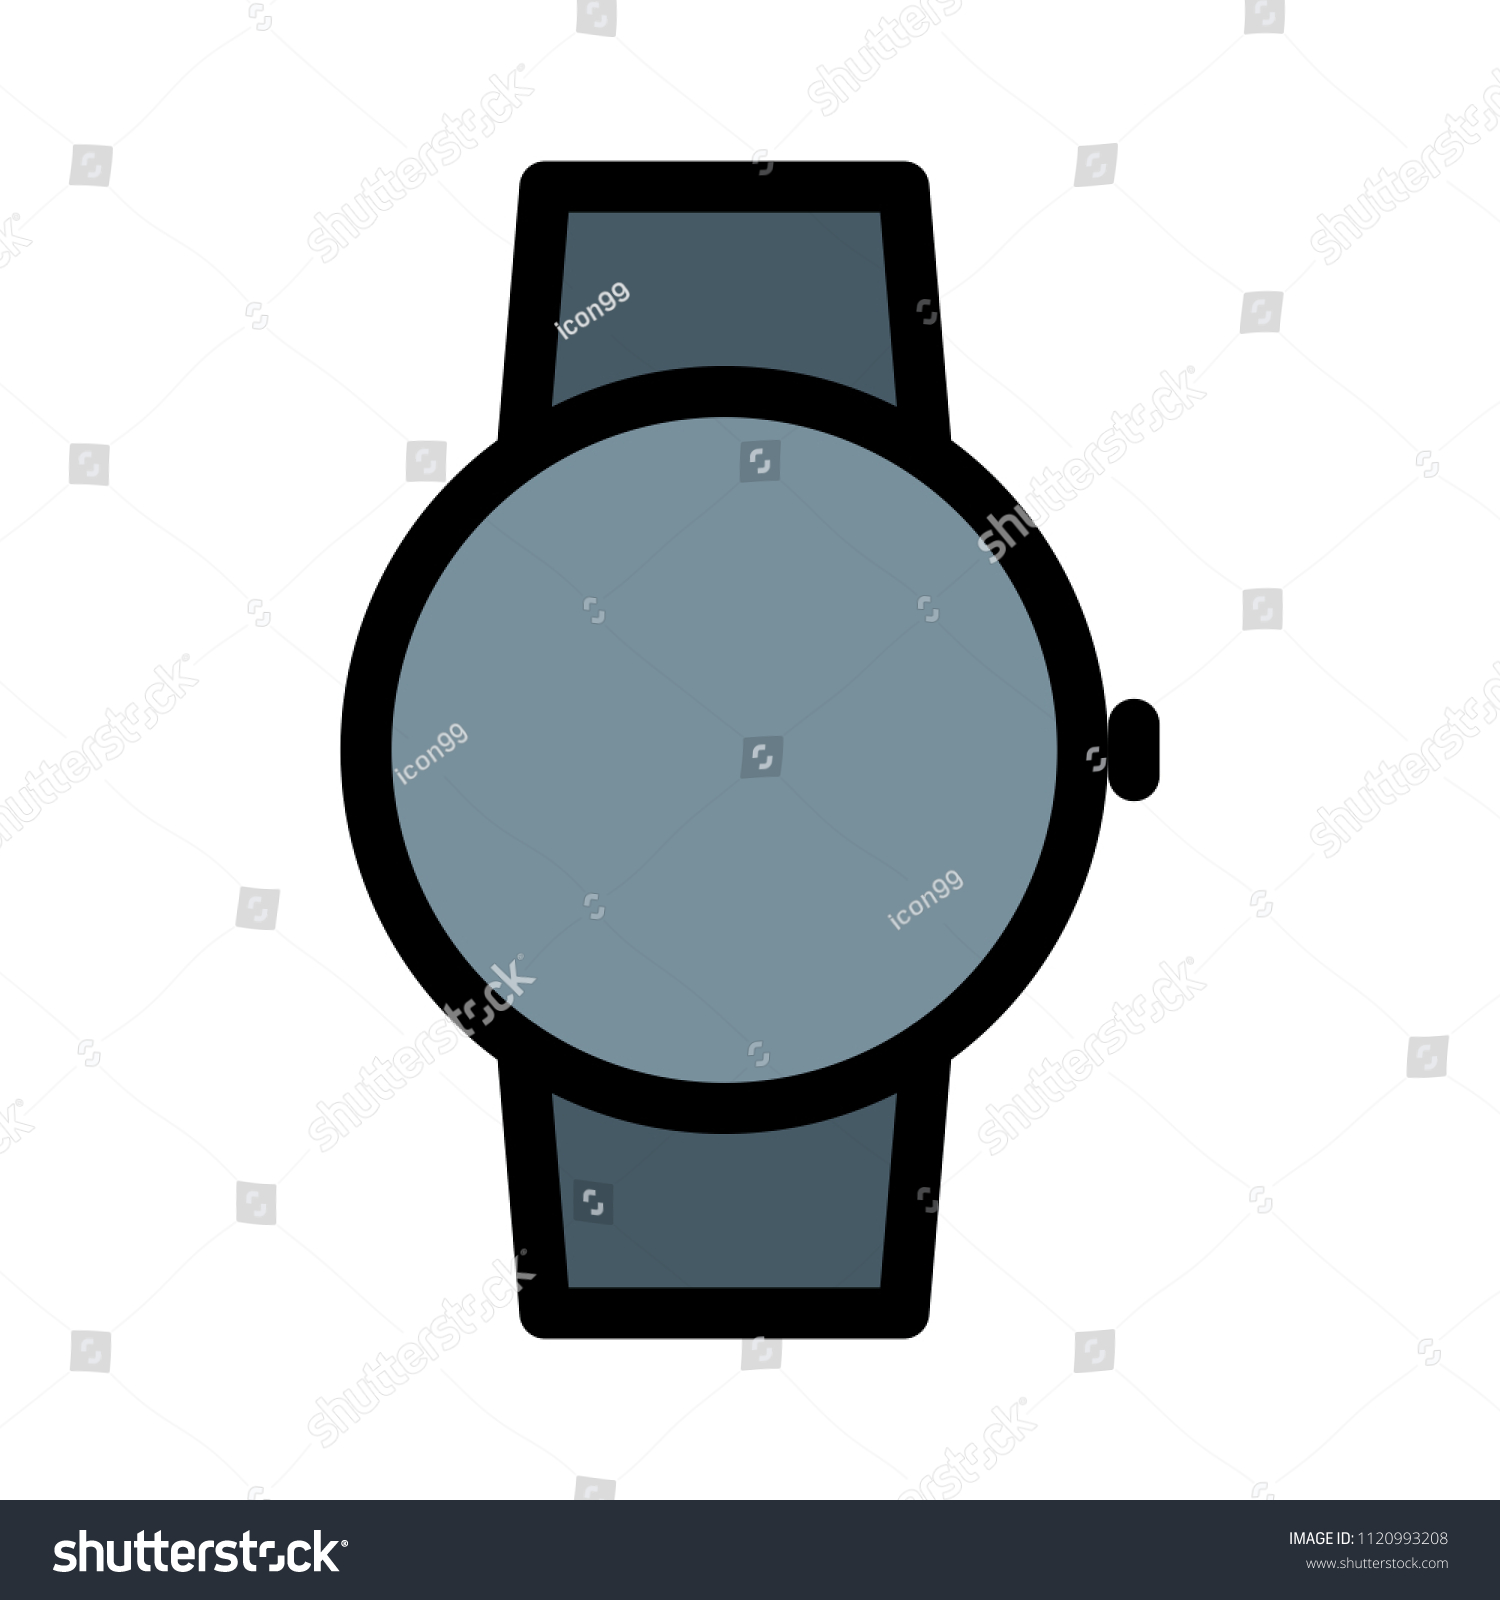 round faced smartwatch